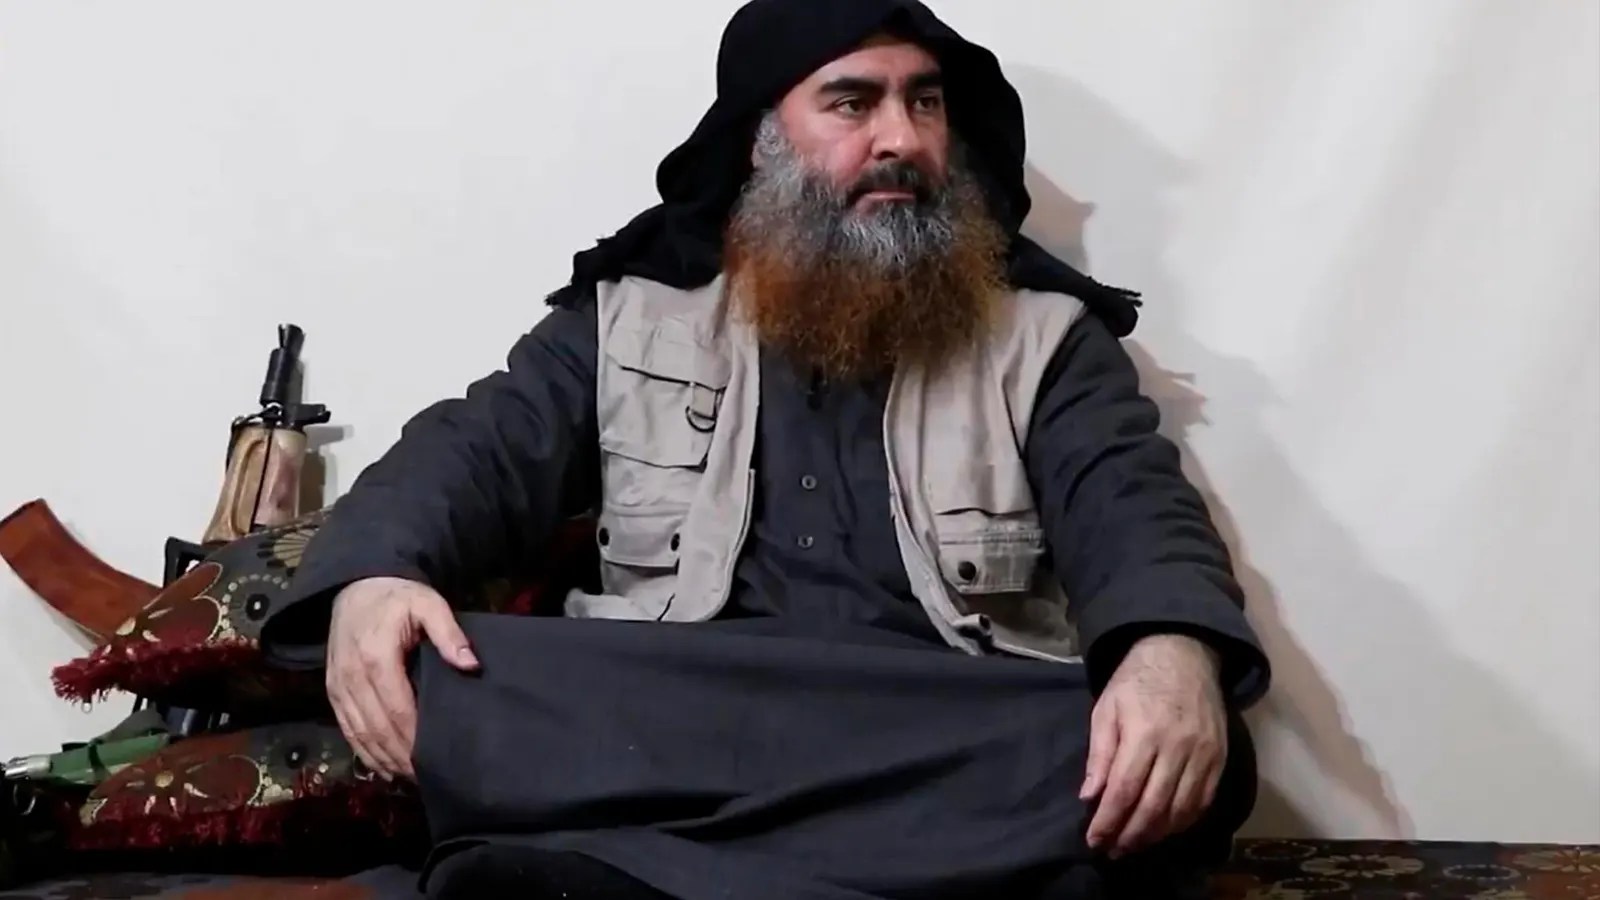 El chaleco explosivo, “uniforme de reglamento” de los jefes del Estado Islámico